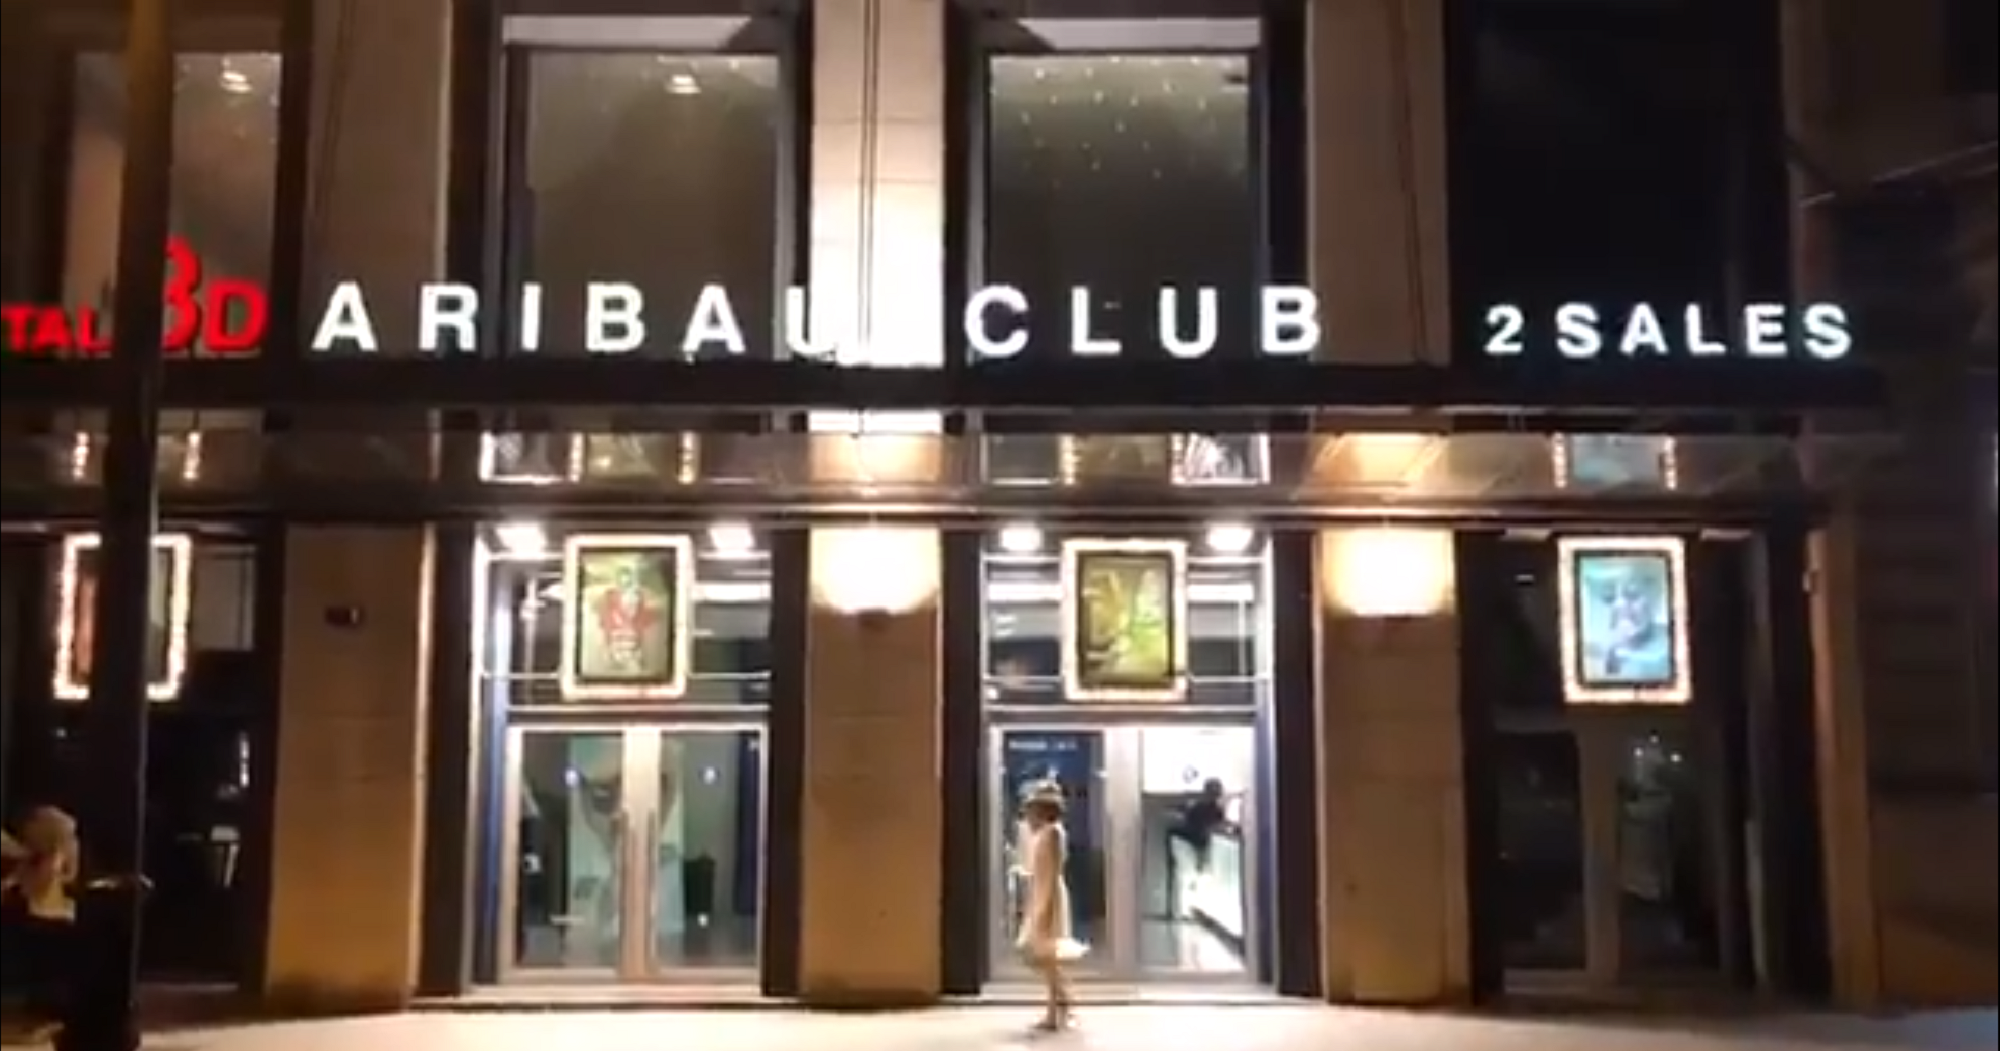 El histórico cine Aribau Club de Barcelona se despide